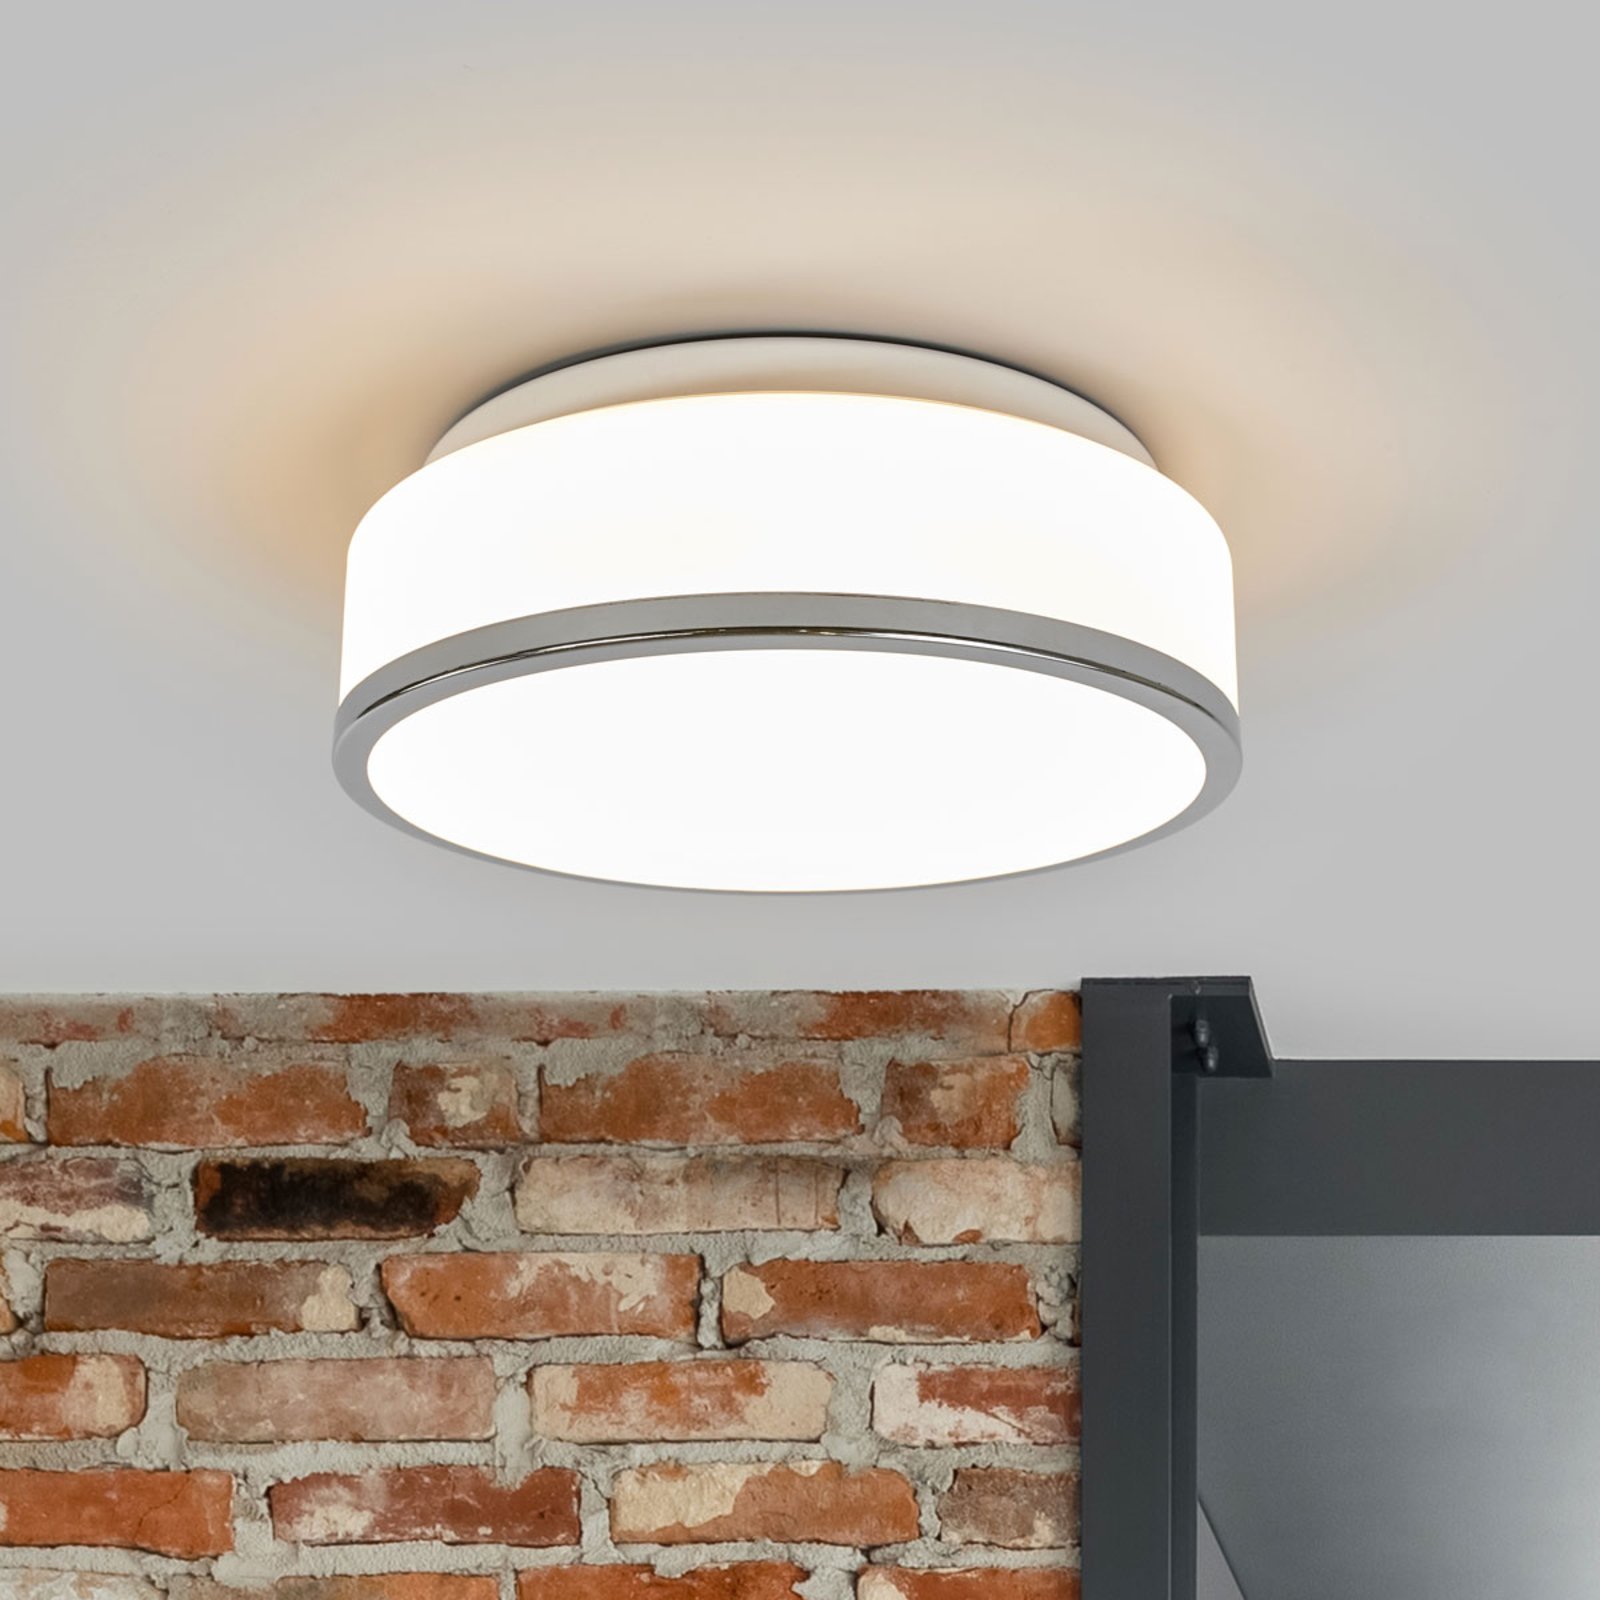 Flush IP44 ceiling light, Ø 28cm, chrome